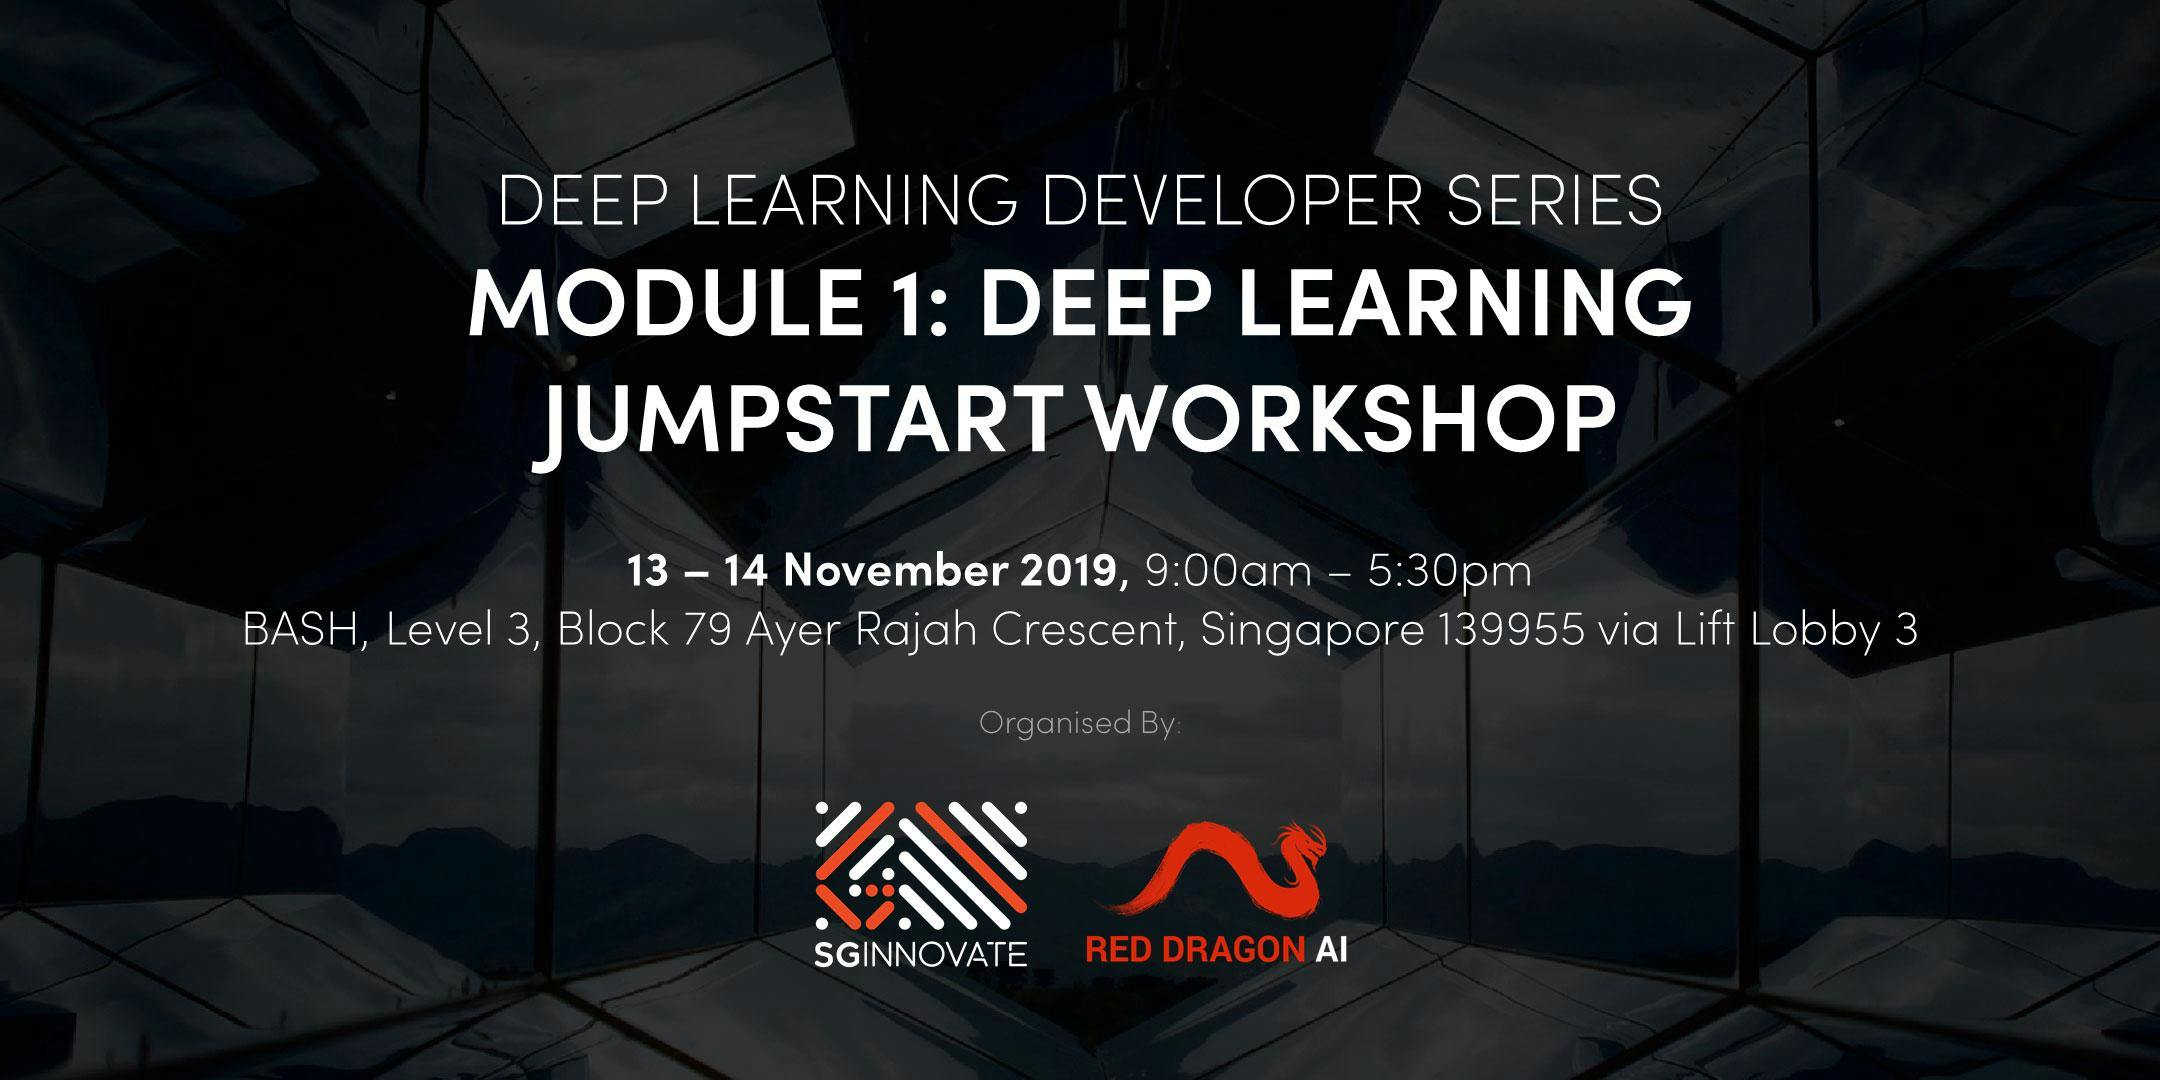 Deep Learning Jumpstart Workshop (13 – 14 November 2019)